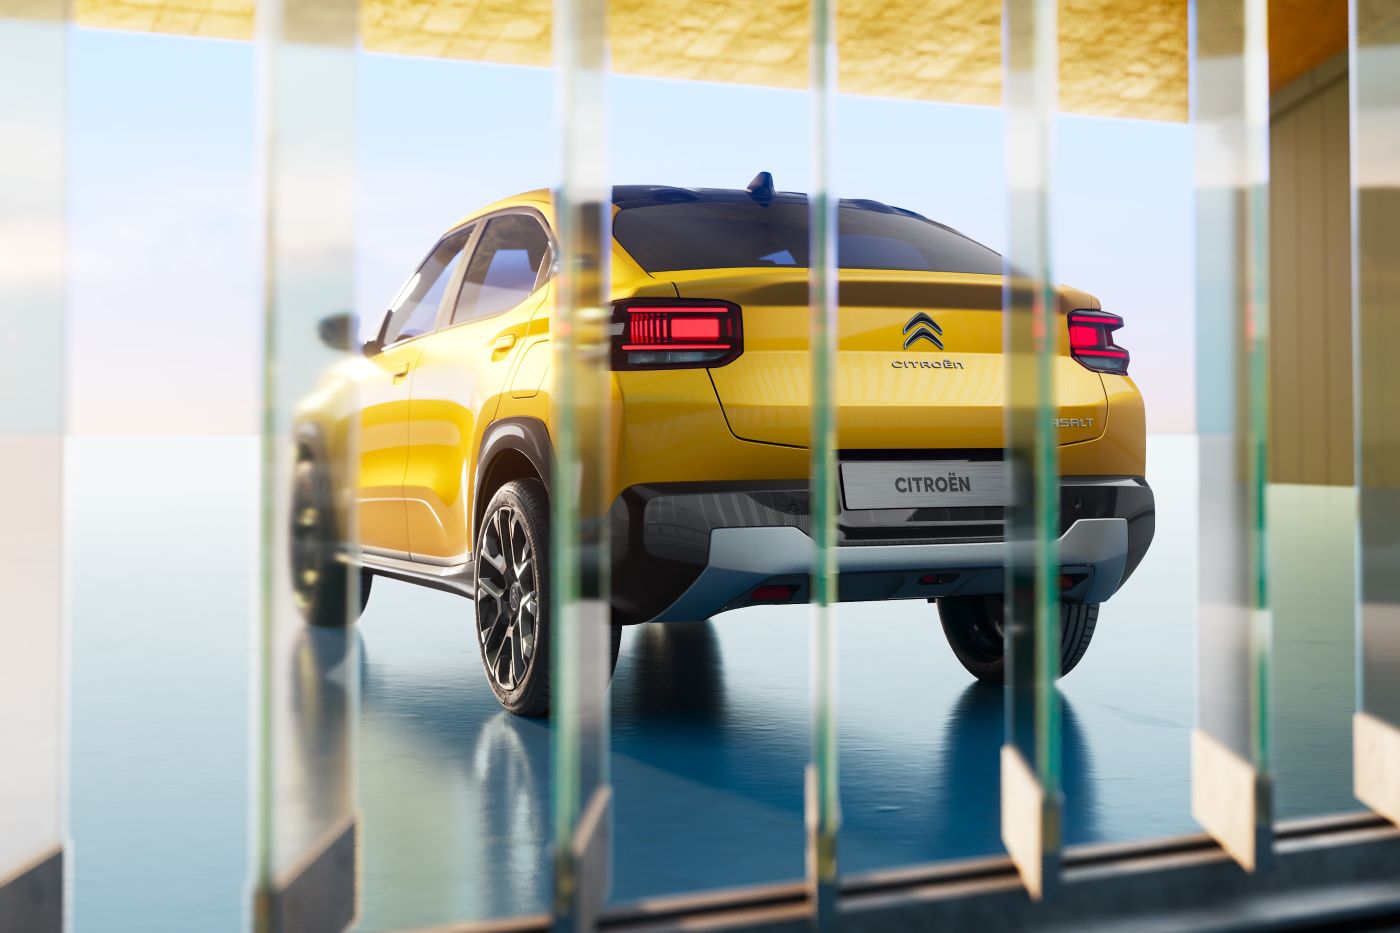 Citroën Basalt combina la elegancia de un coupé, la robustez de un SUV y el confort de una berlina de 5 puertas. Los mercados de Suramérica lo esperan pronto. V12MAGAZINE